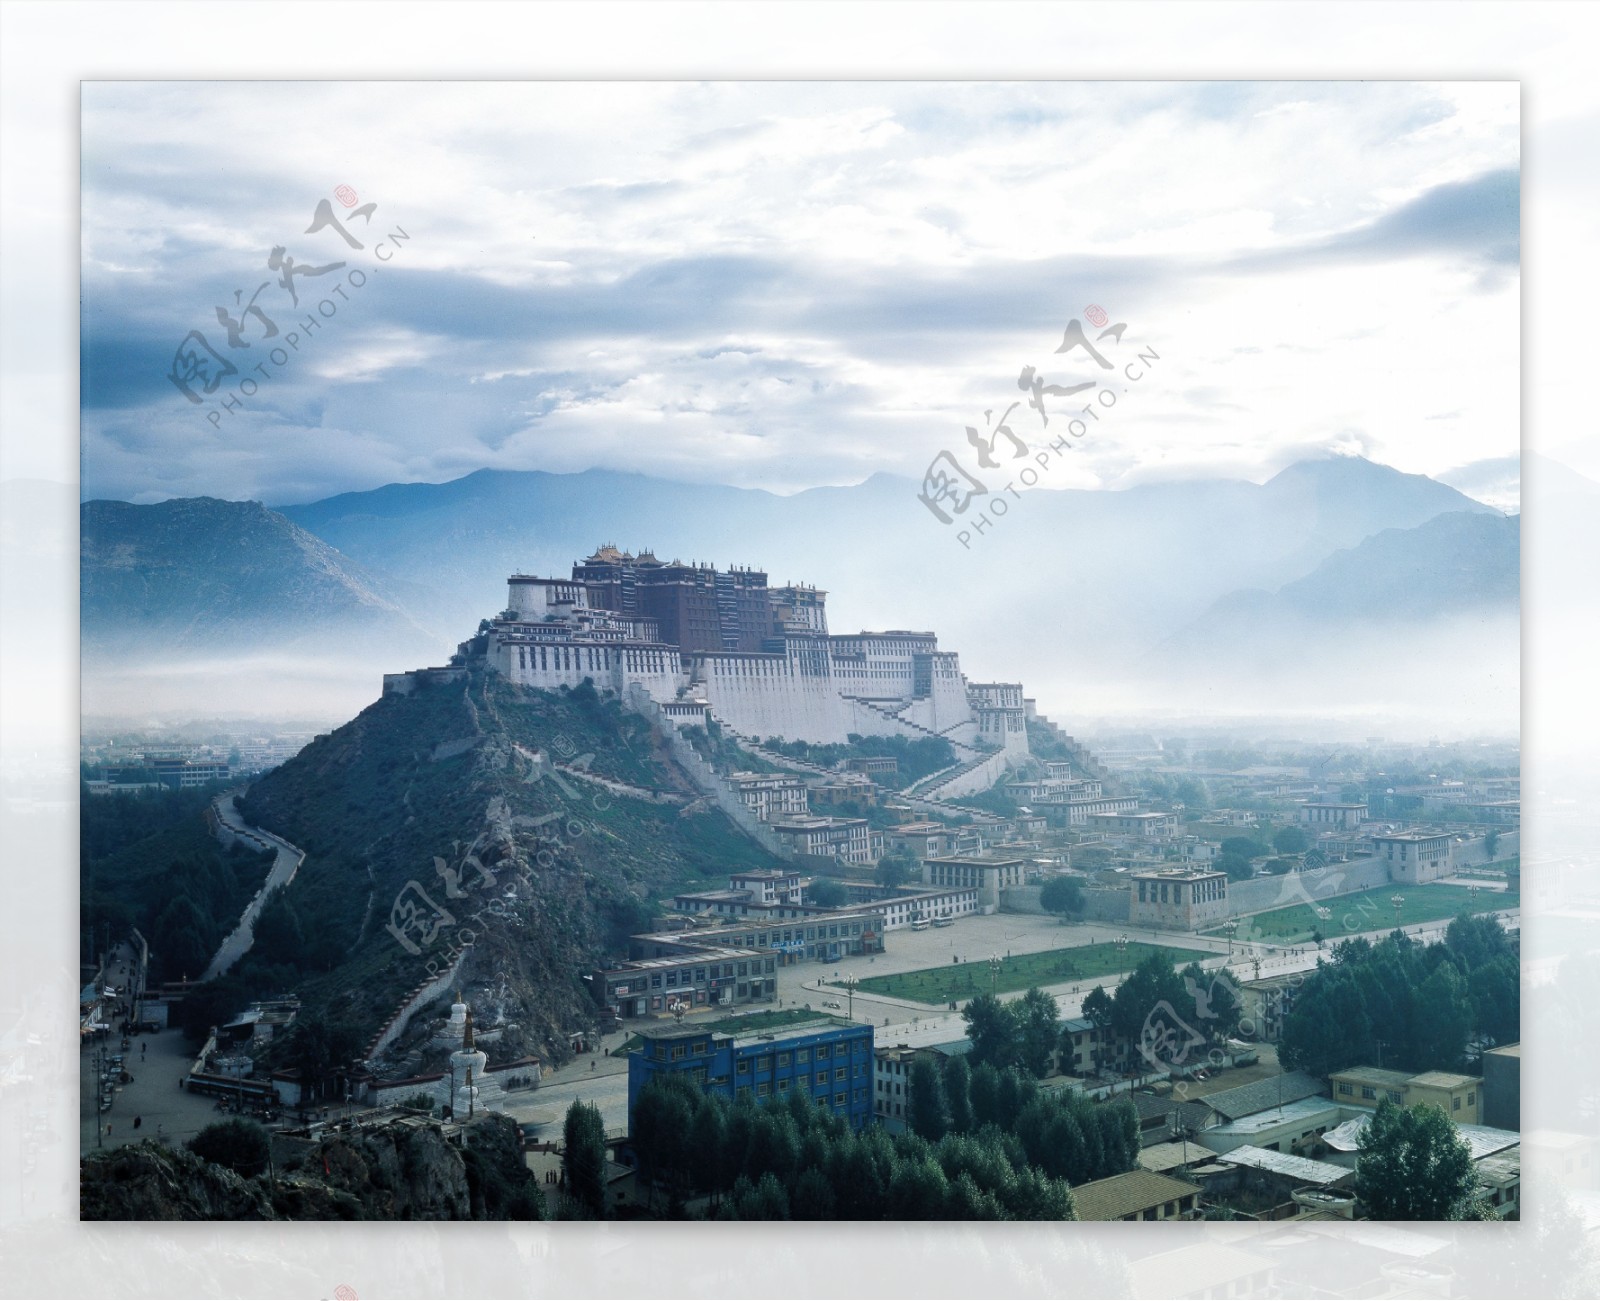 西藏布达拉宫远景图